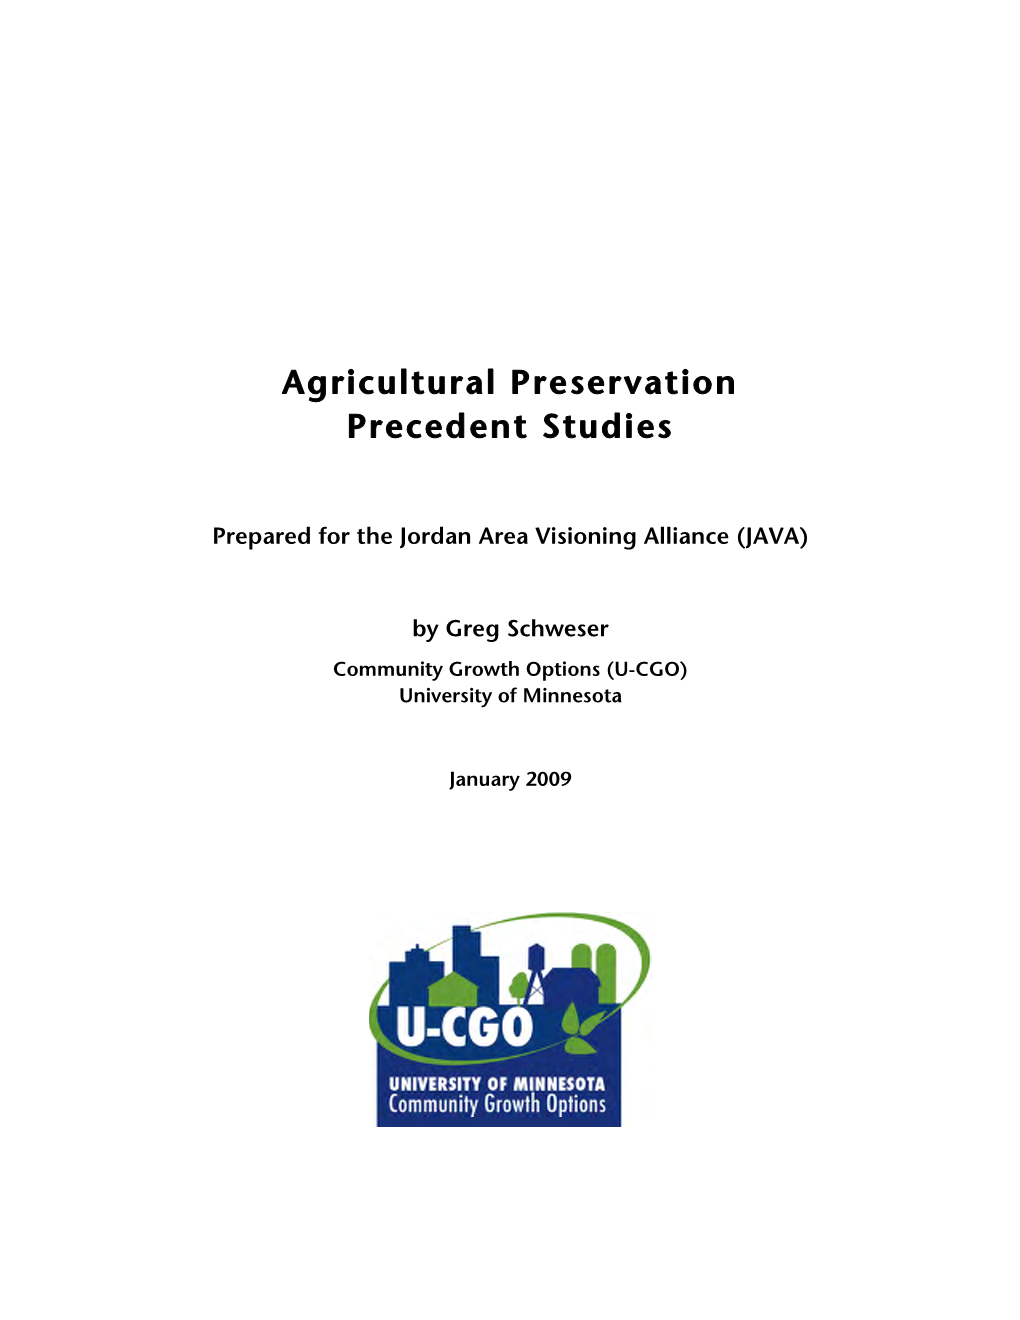 Agricultural Preservation Precedent Studies